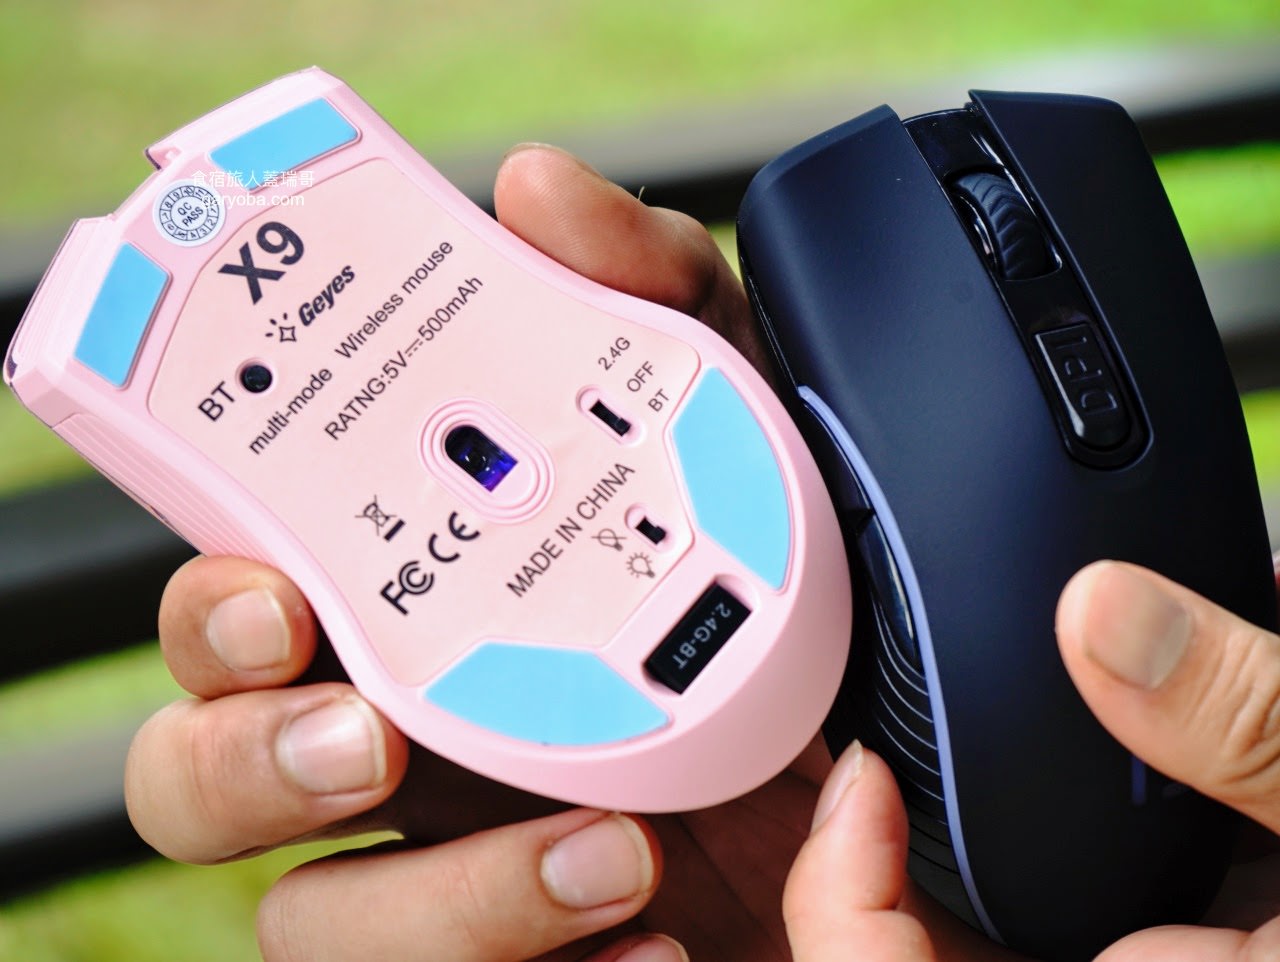 OGORUS X9 無線藍牙靜音滑鼠。雙模式快速切換讓你從上班就開始培養手感